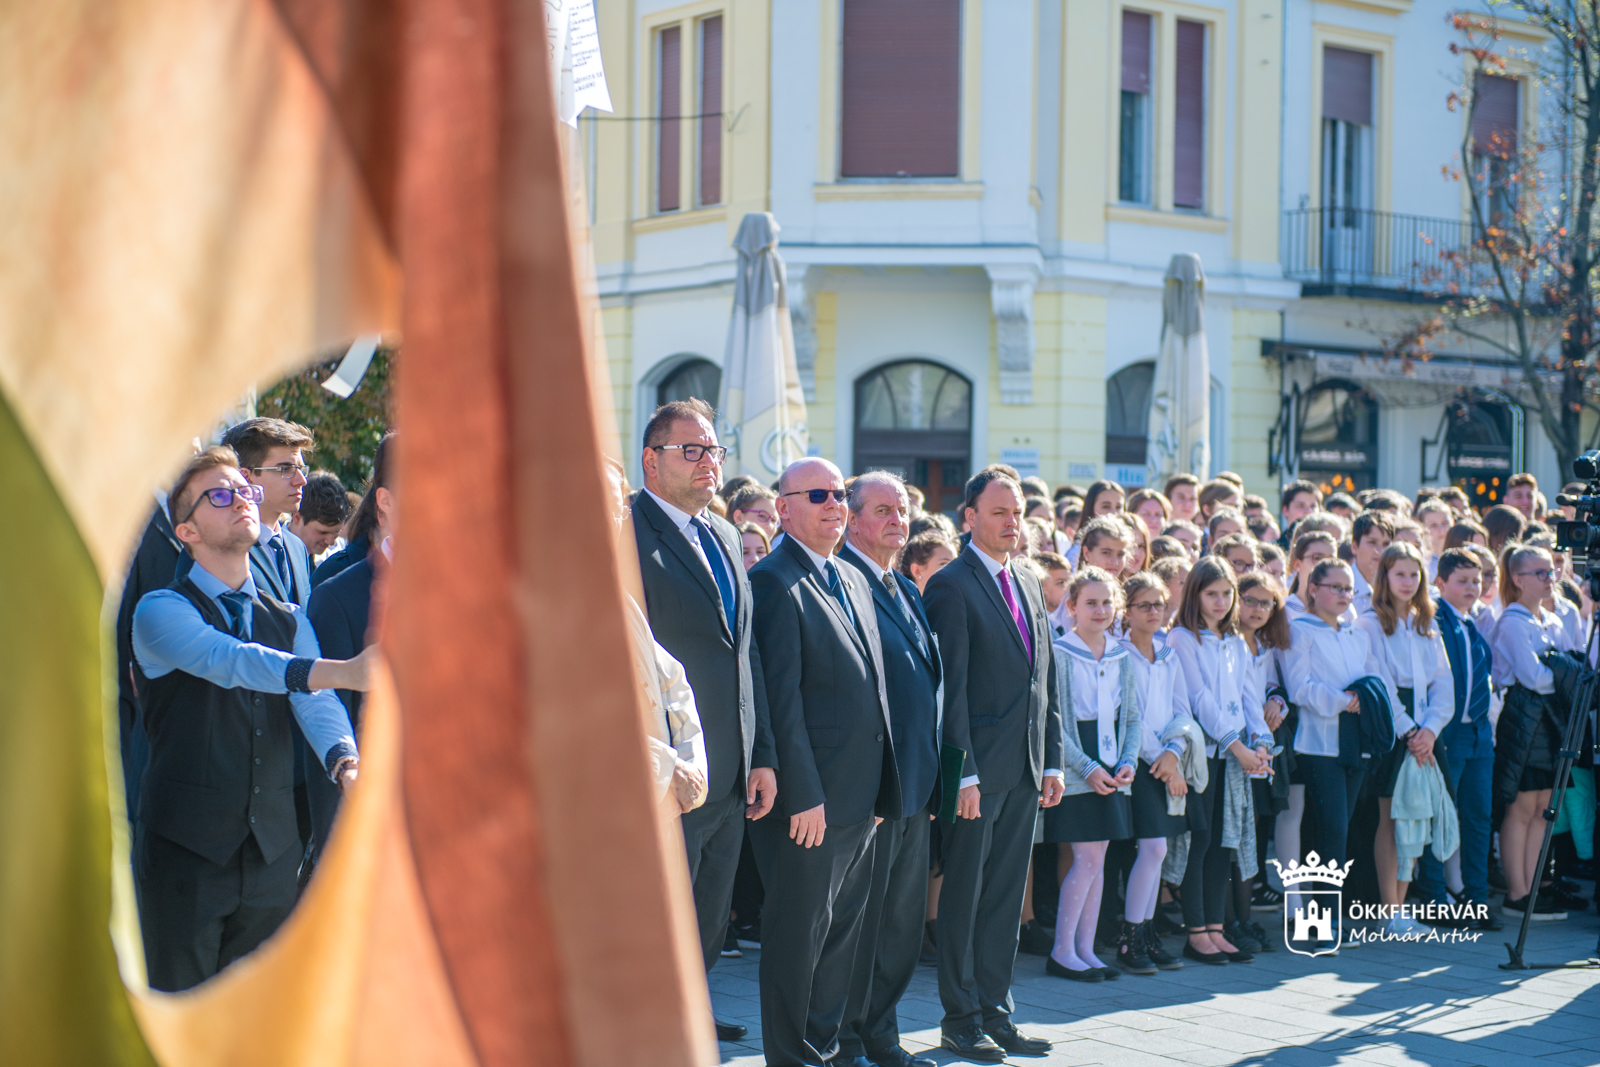 Cisztercis diákok ünnepi műsora a Hotel Magyar Király előtt